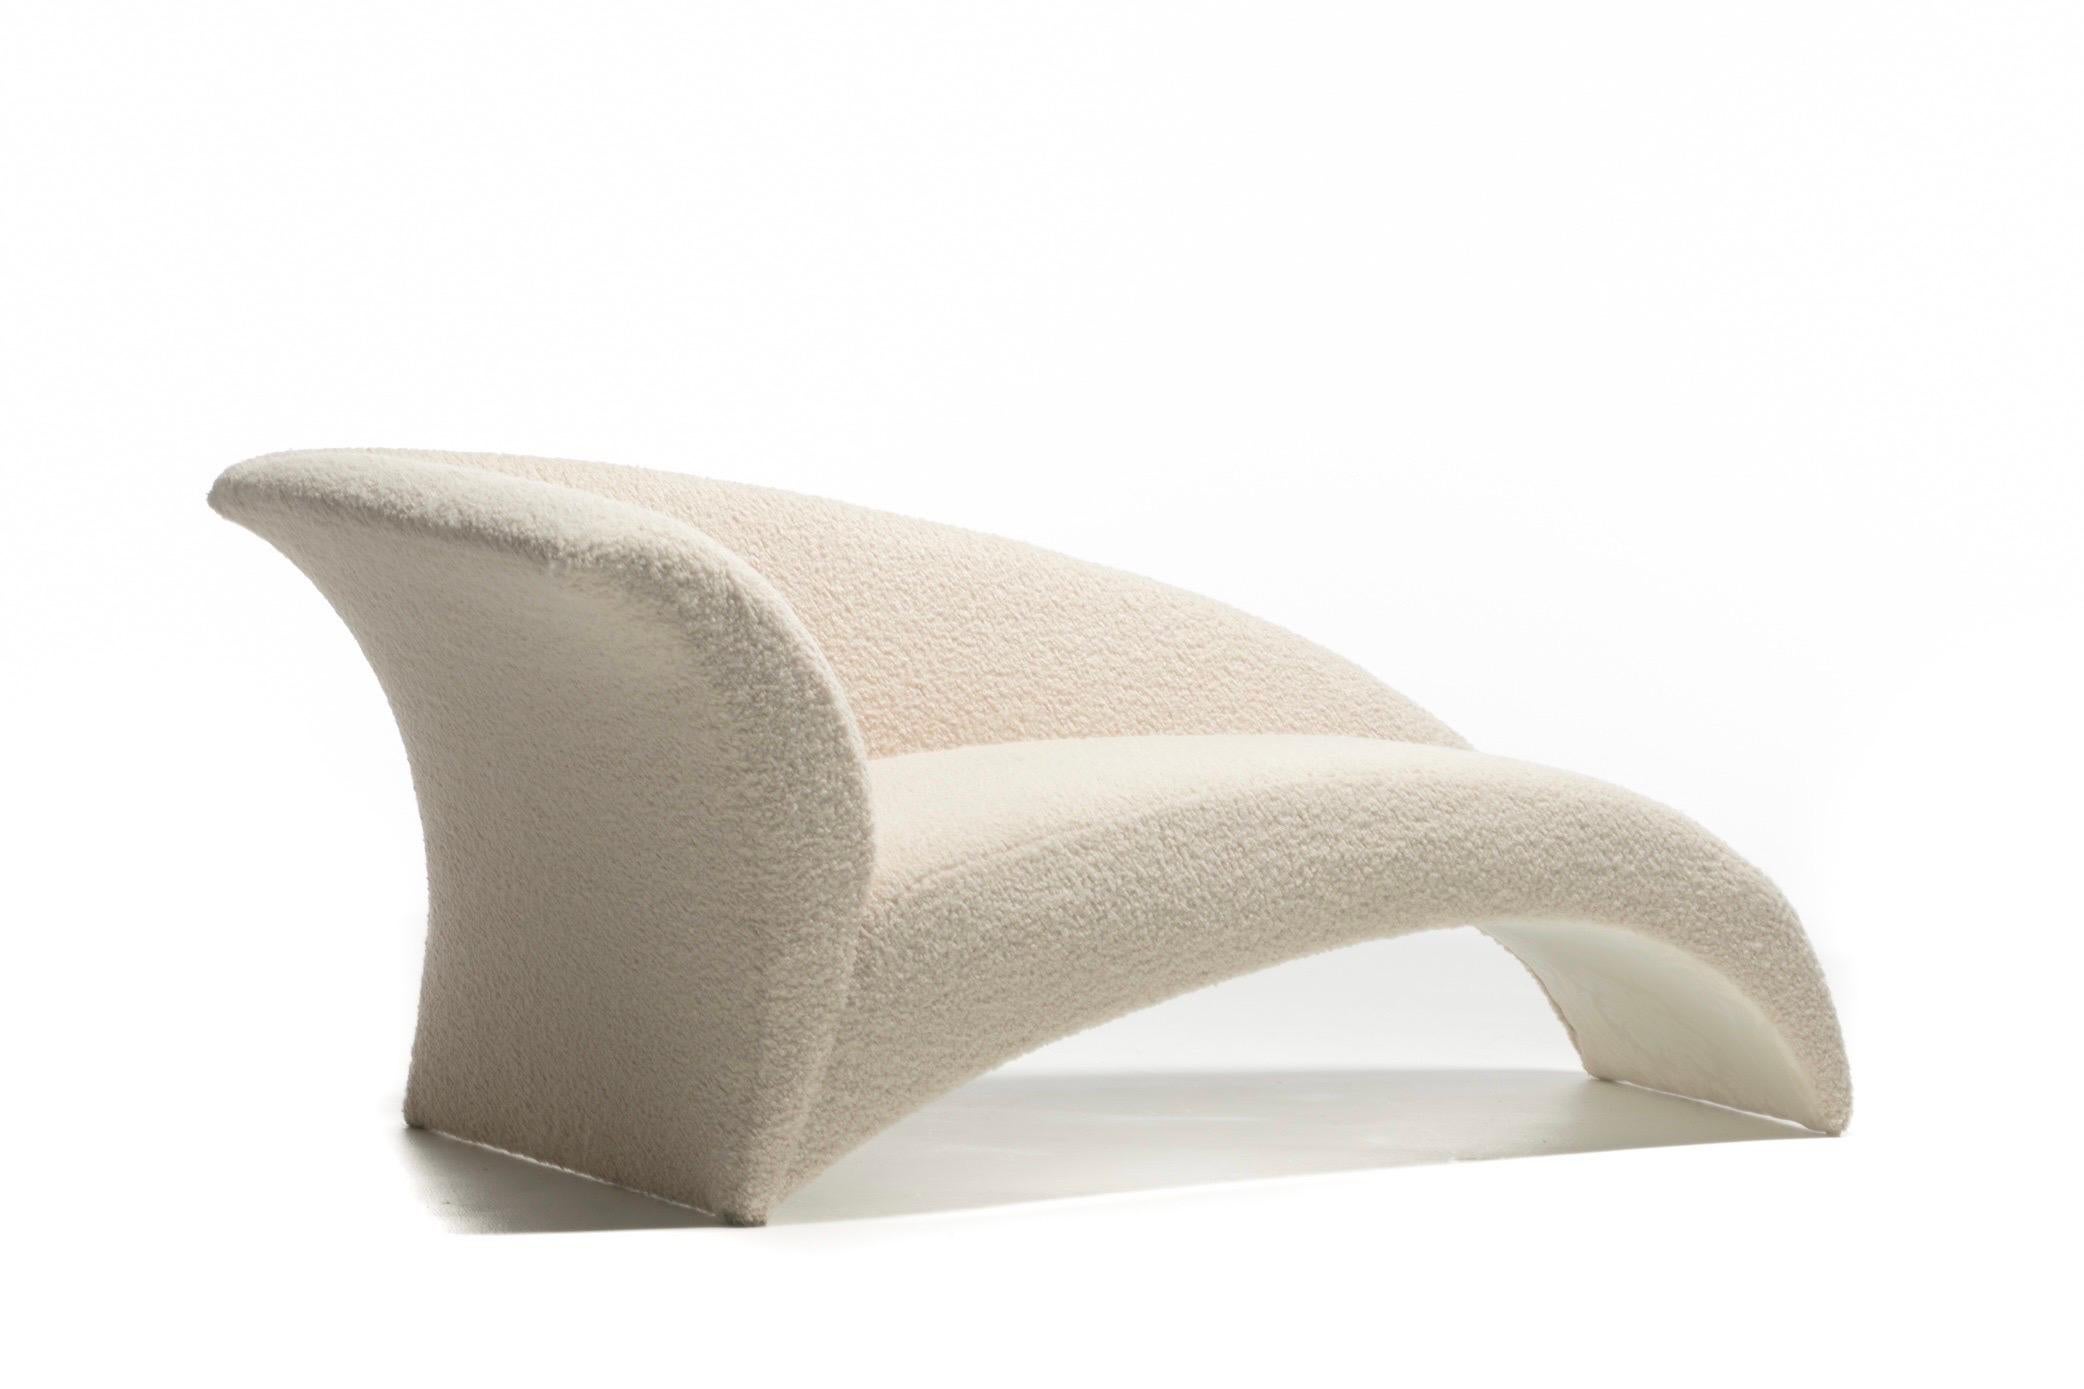 Ein wahres skulpturales Kunstwerk: Lassen Sie sich in diese exquisite Post Modern Chaise Lounge des renommierten Designers Vladimir Kagan für Directional entführen. Moderner Glamour. Chic und hohe Kunst, ohne Zweifel. Im Gegensatz zu herkömmlichen